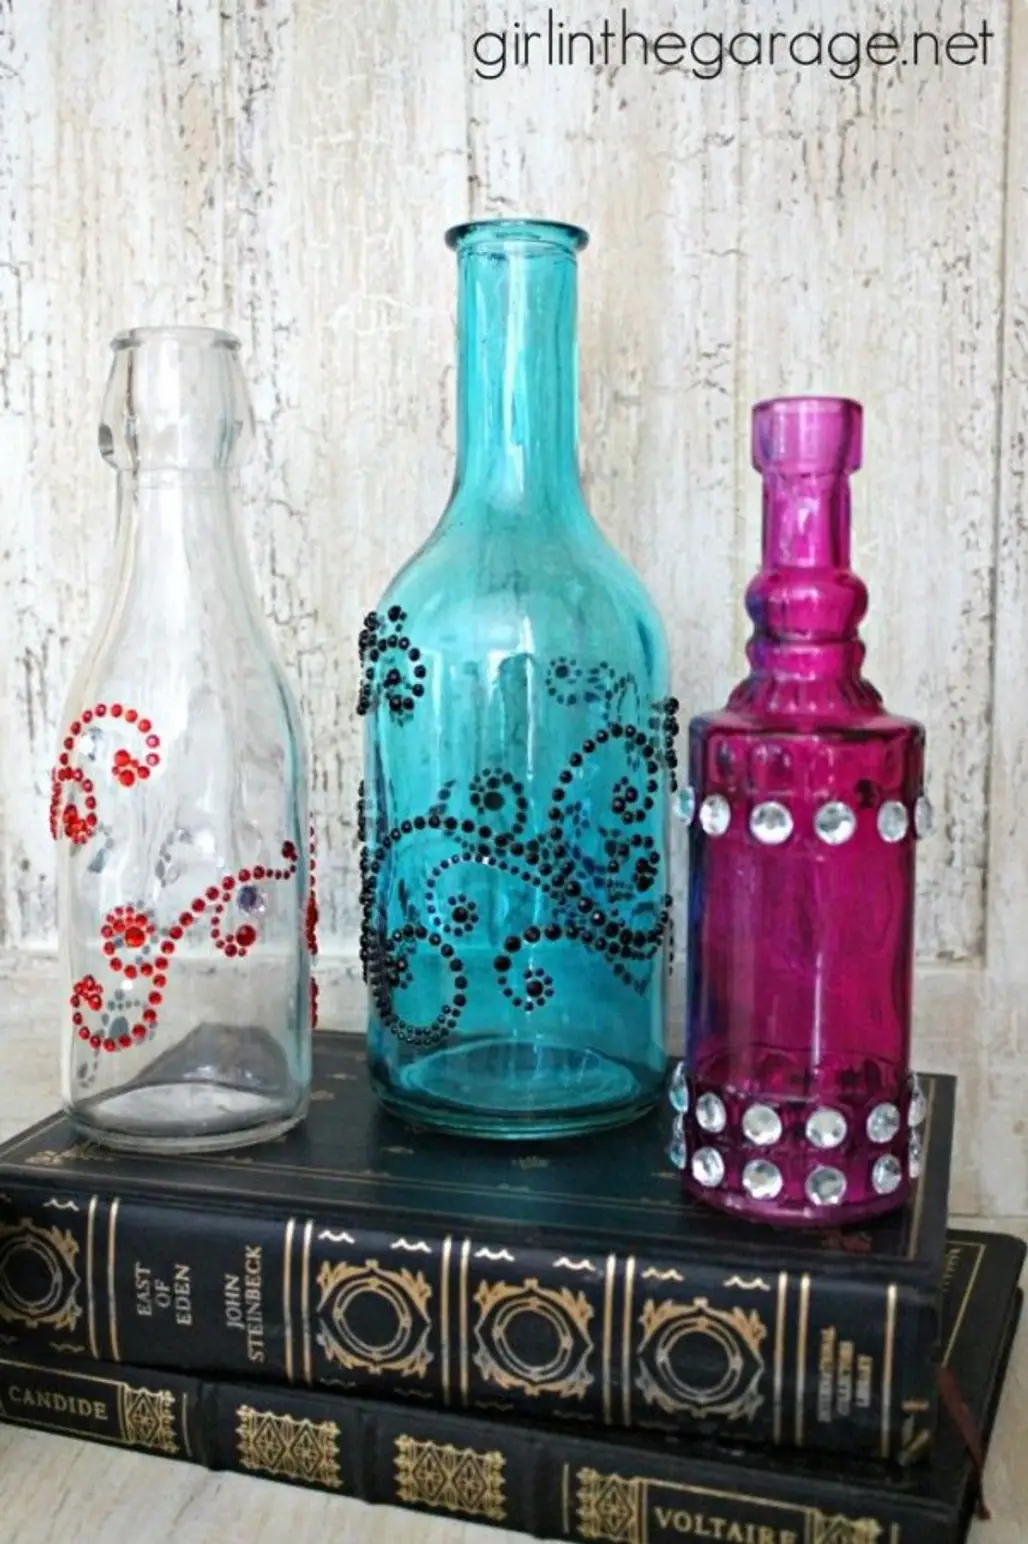 bottle,drinkware,glass bottle,wine bottle,product,